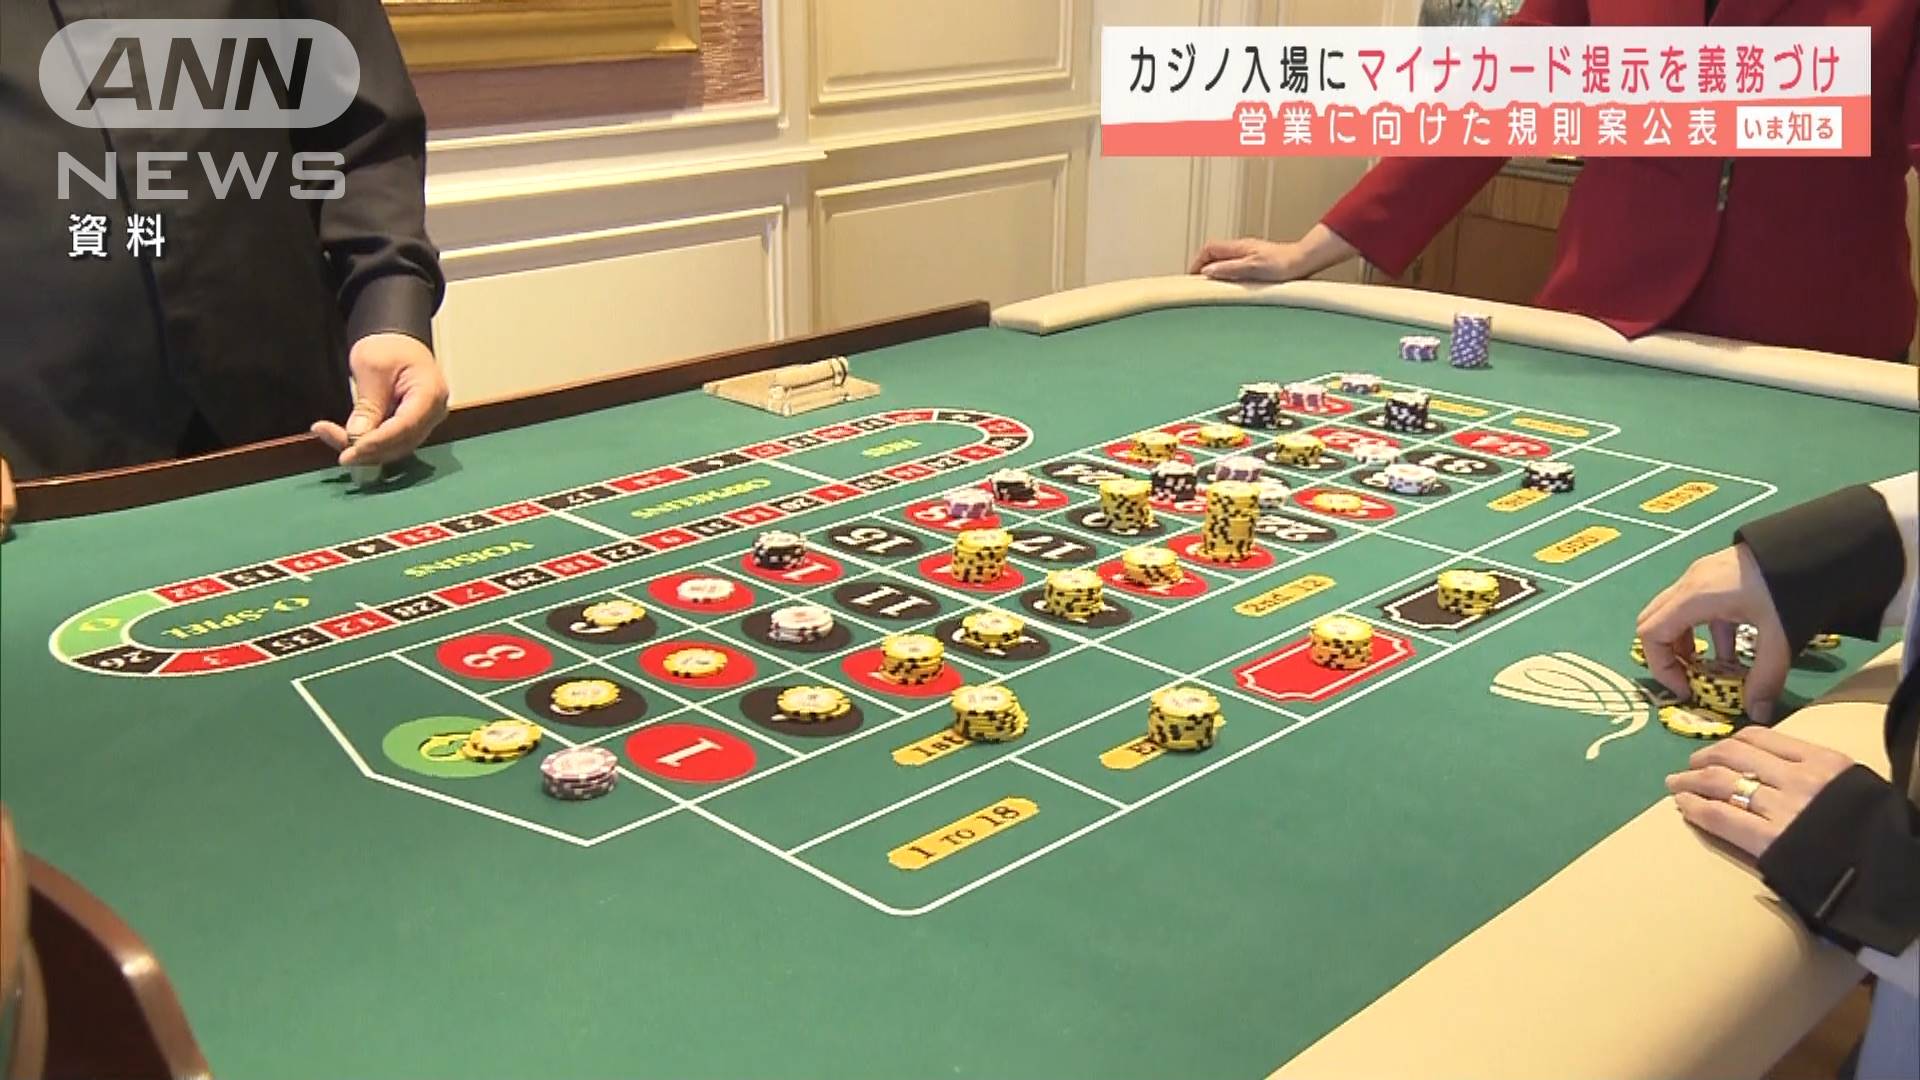 カジノ営業の規則案公表 ギャンブル依存症対策も テレ朝news テレビ朝日のニュースサイト